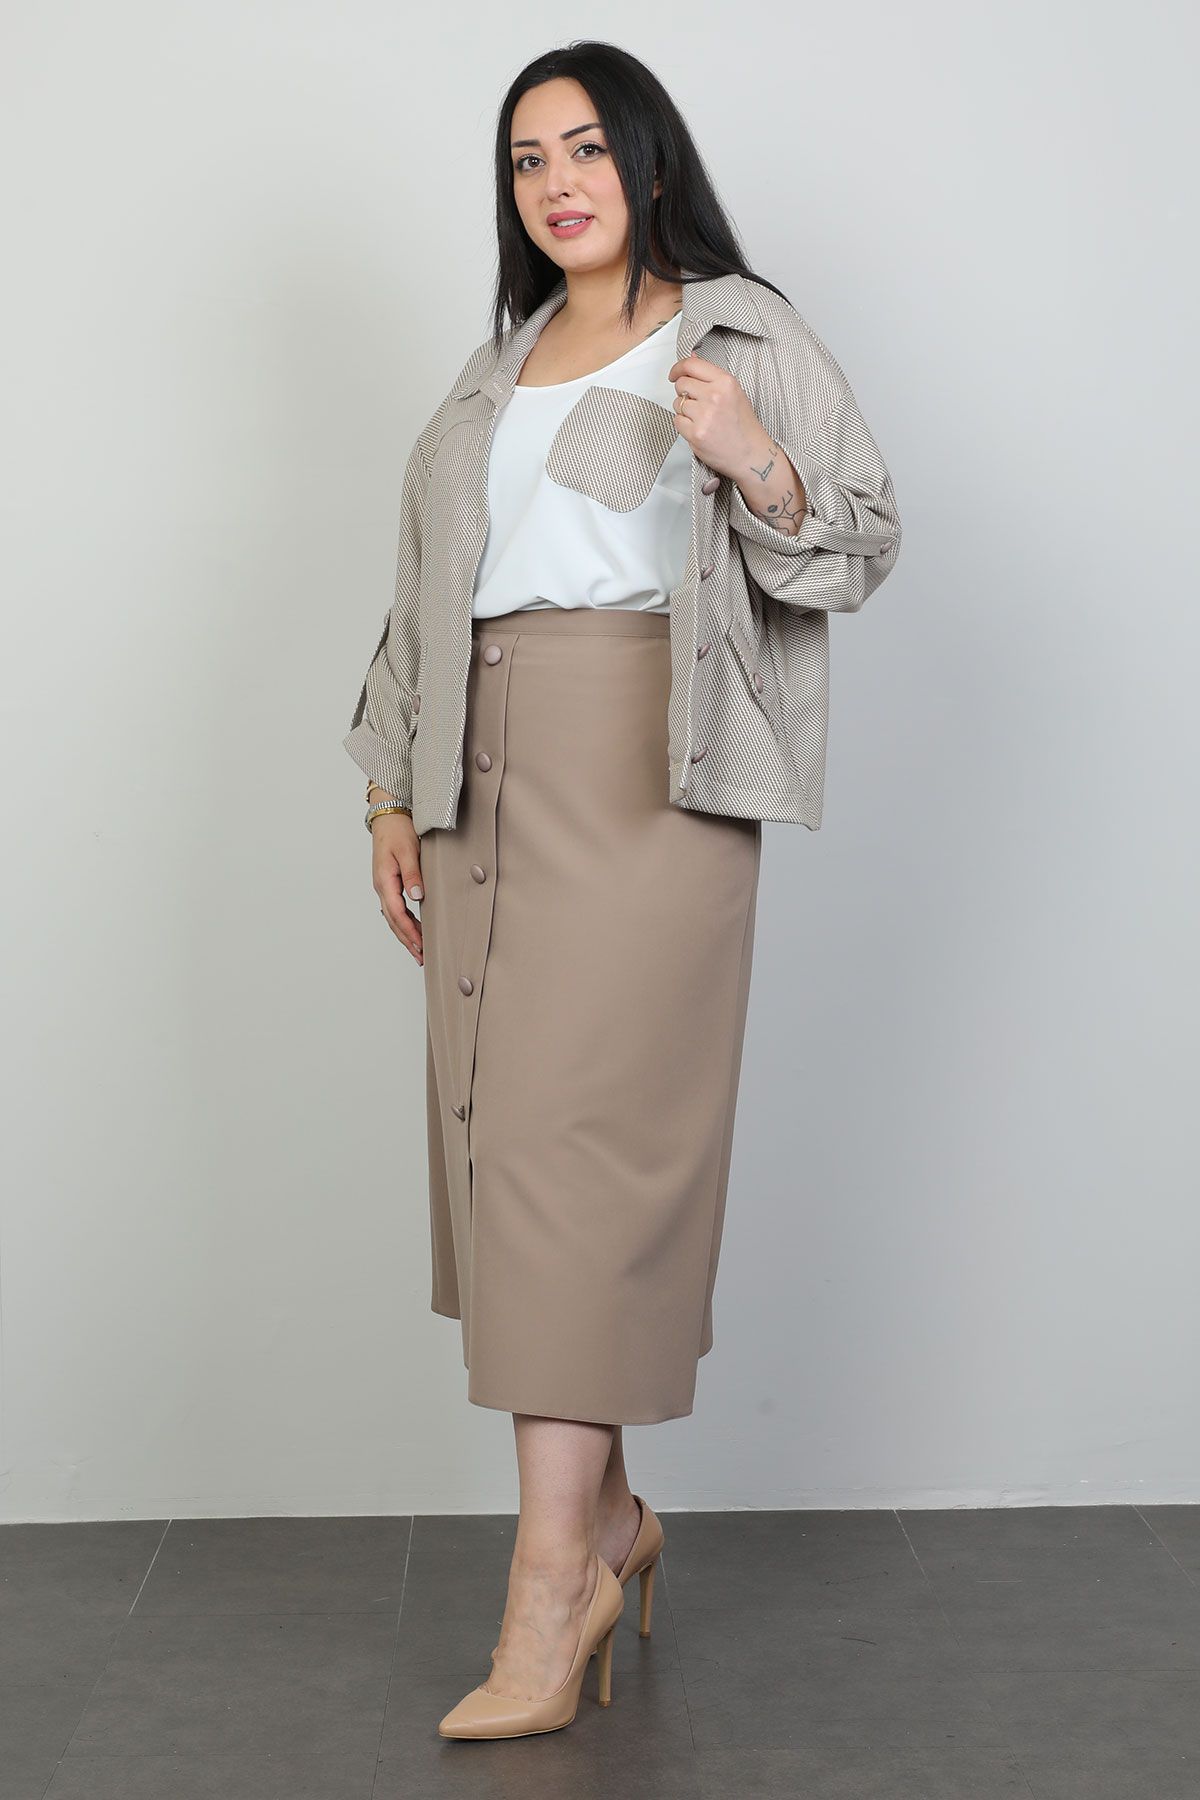 Nzr Line 3910xl BROWN Plus Size Women Suit